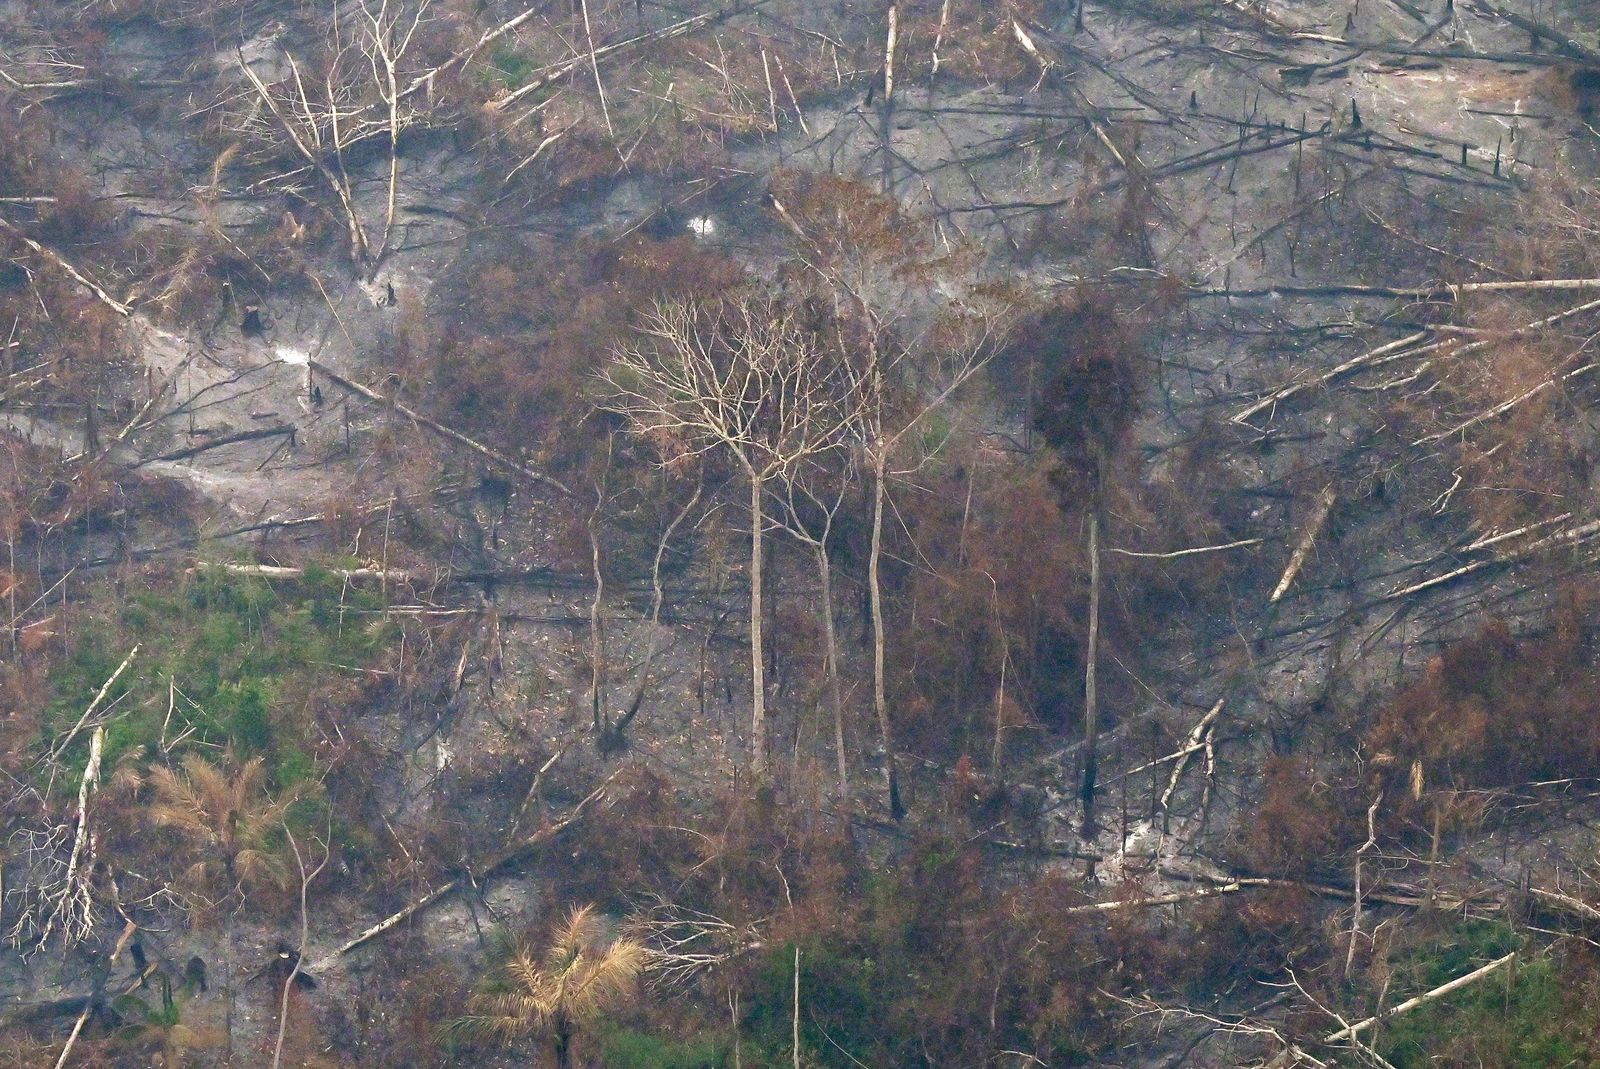 جانب من عملية إزالة الغابات بسبب الحرائق في منطقة لابريا، بولاية الأمازون شمال البراويل، 2 سبتمبر 2022 - AFP